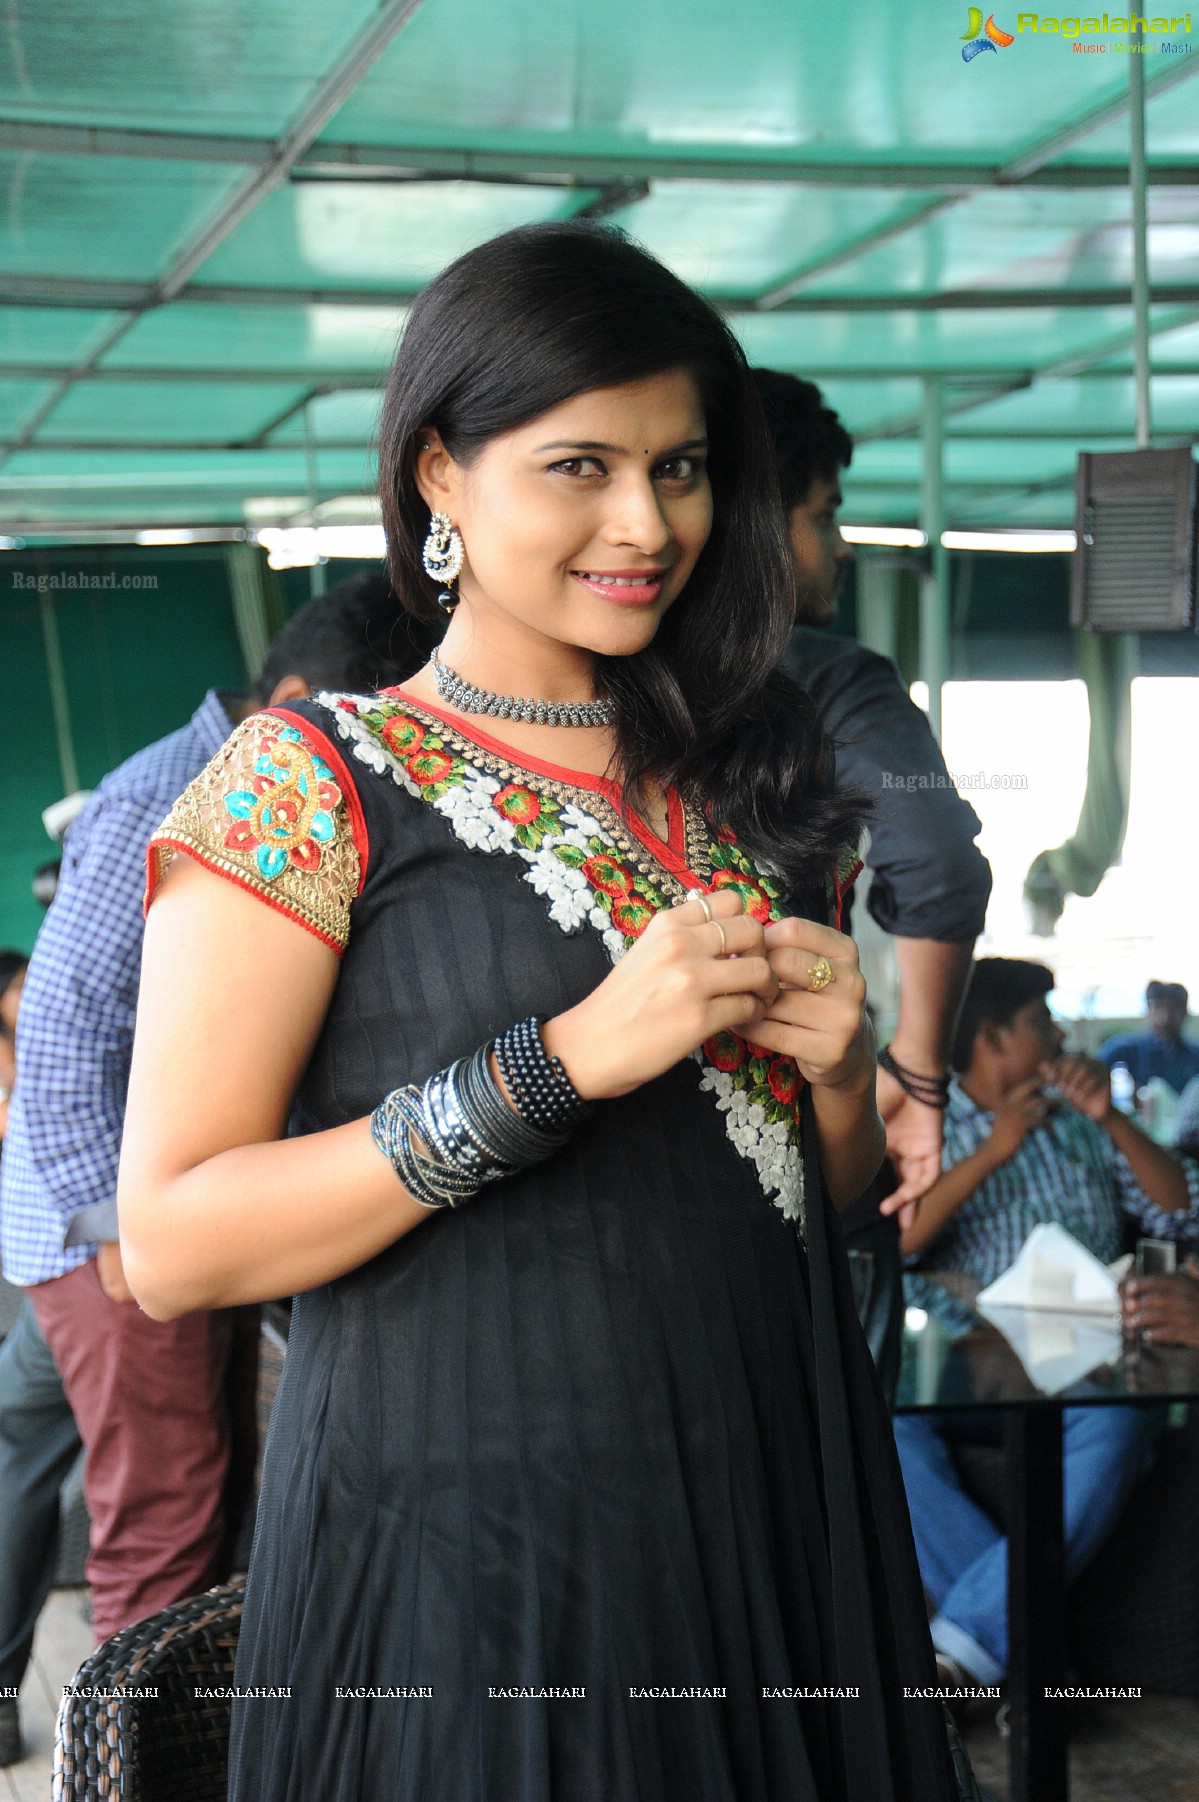 Sangeetha Reddy